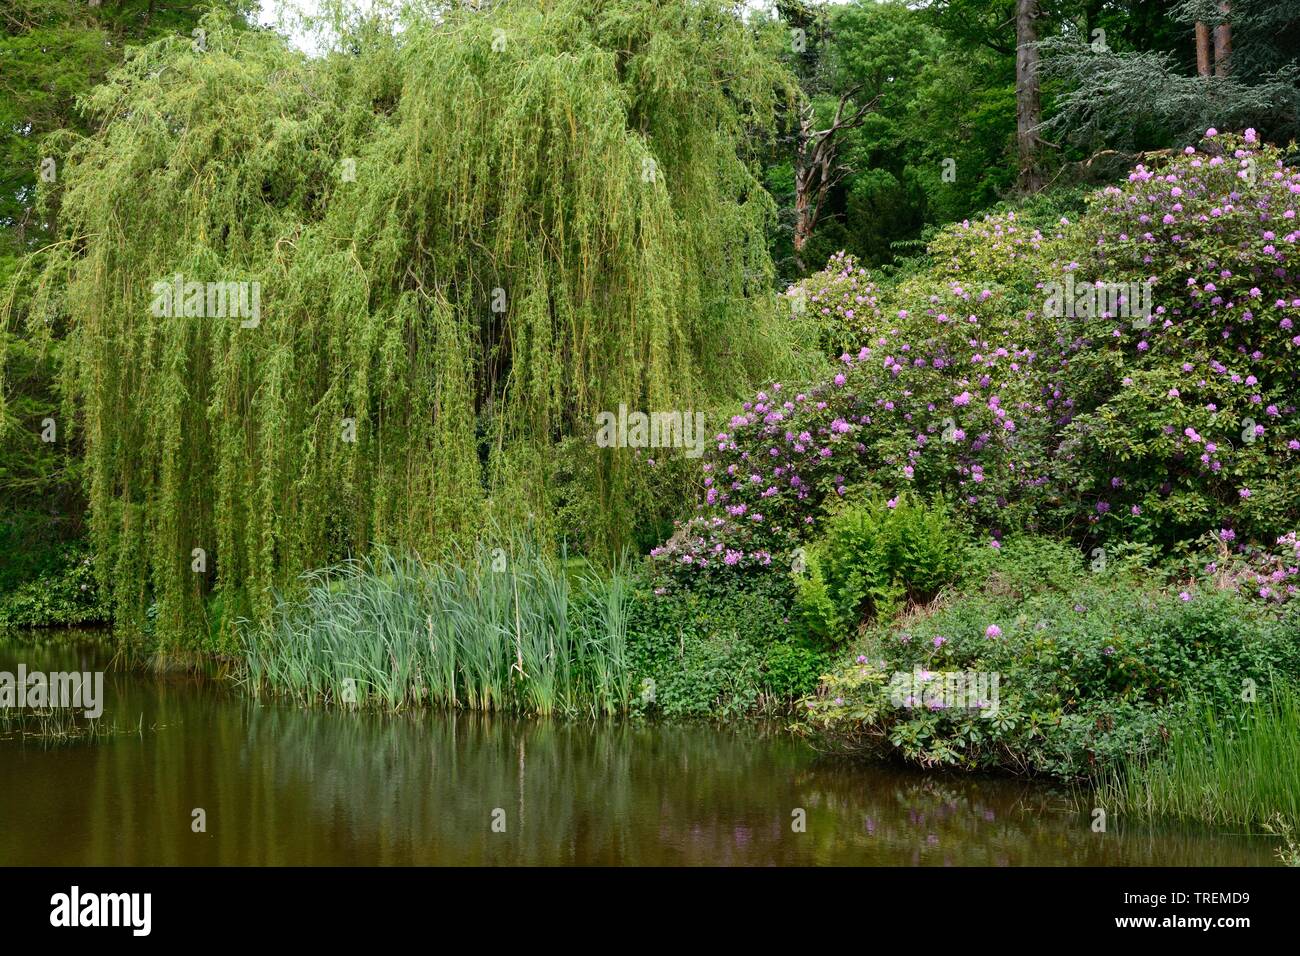 Saule pleureur arbre et rhododendron sur le bord d'un étang de jardin Banque D'Images